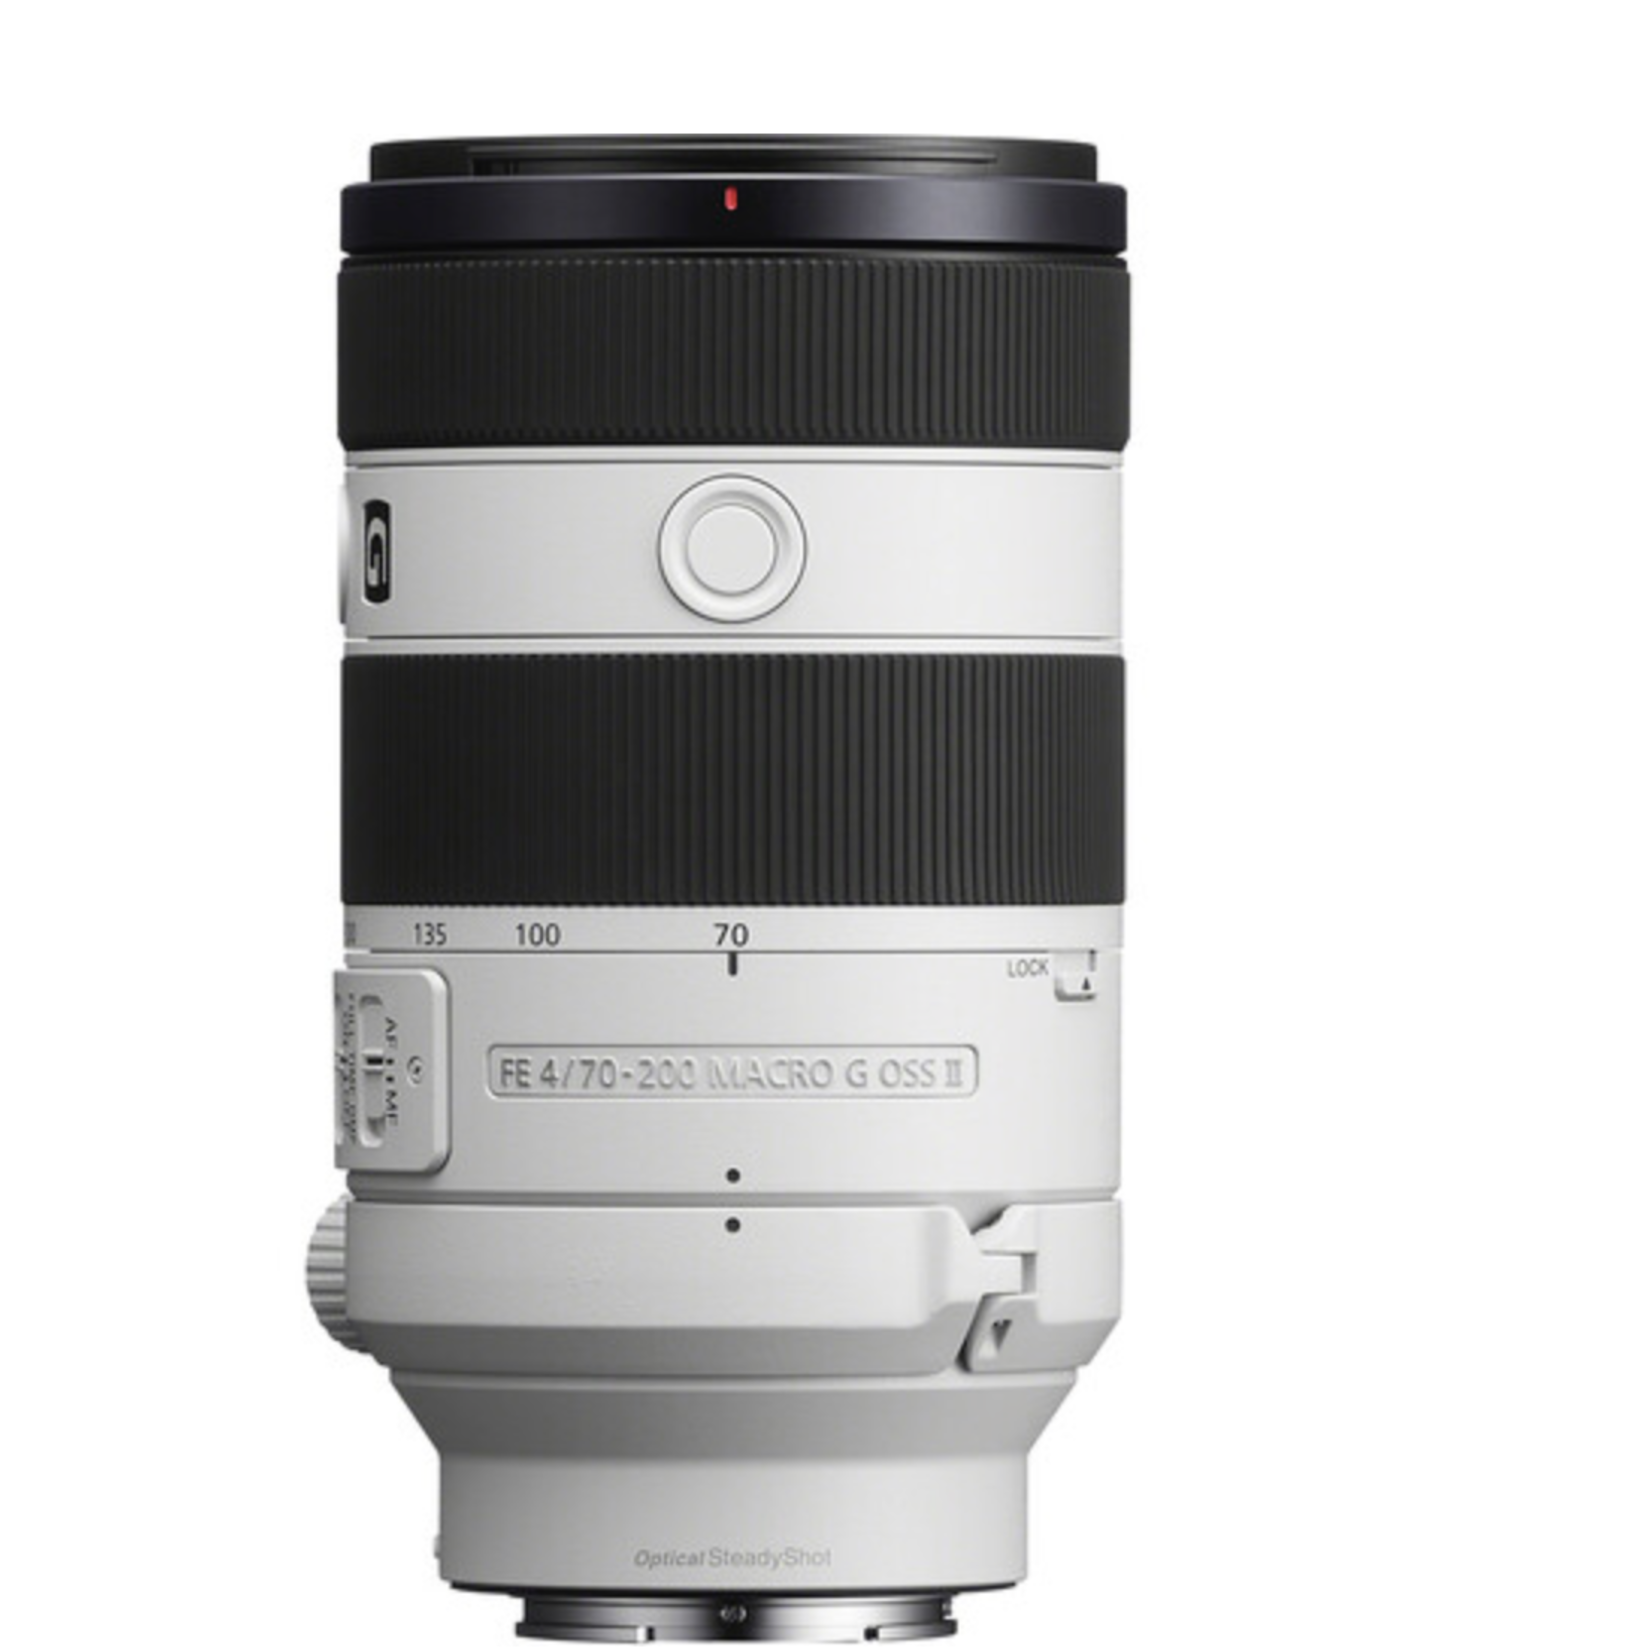 Sony Sony FE 70-200mm f/4 Macro G OSS II Lens (Sony E)